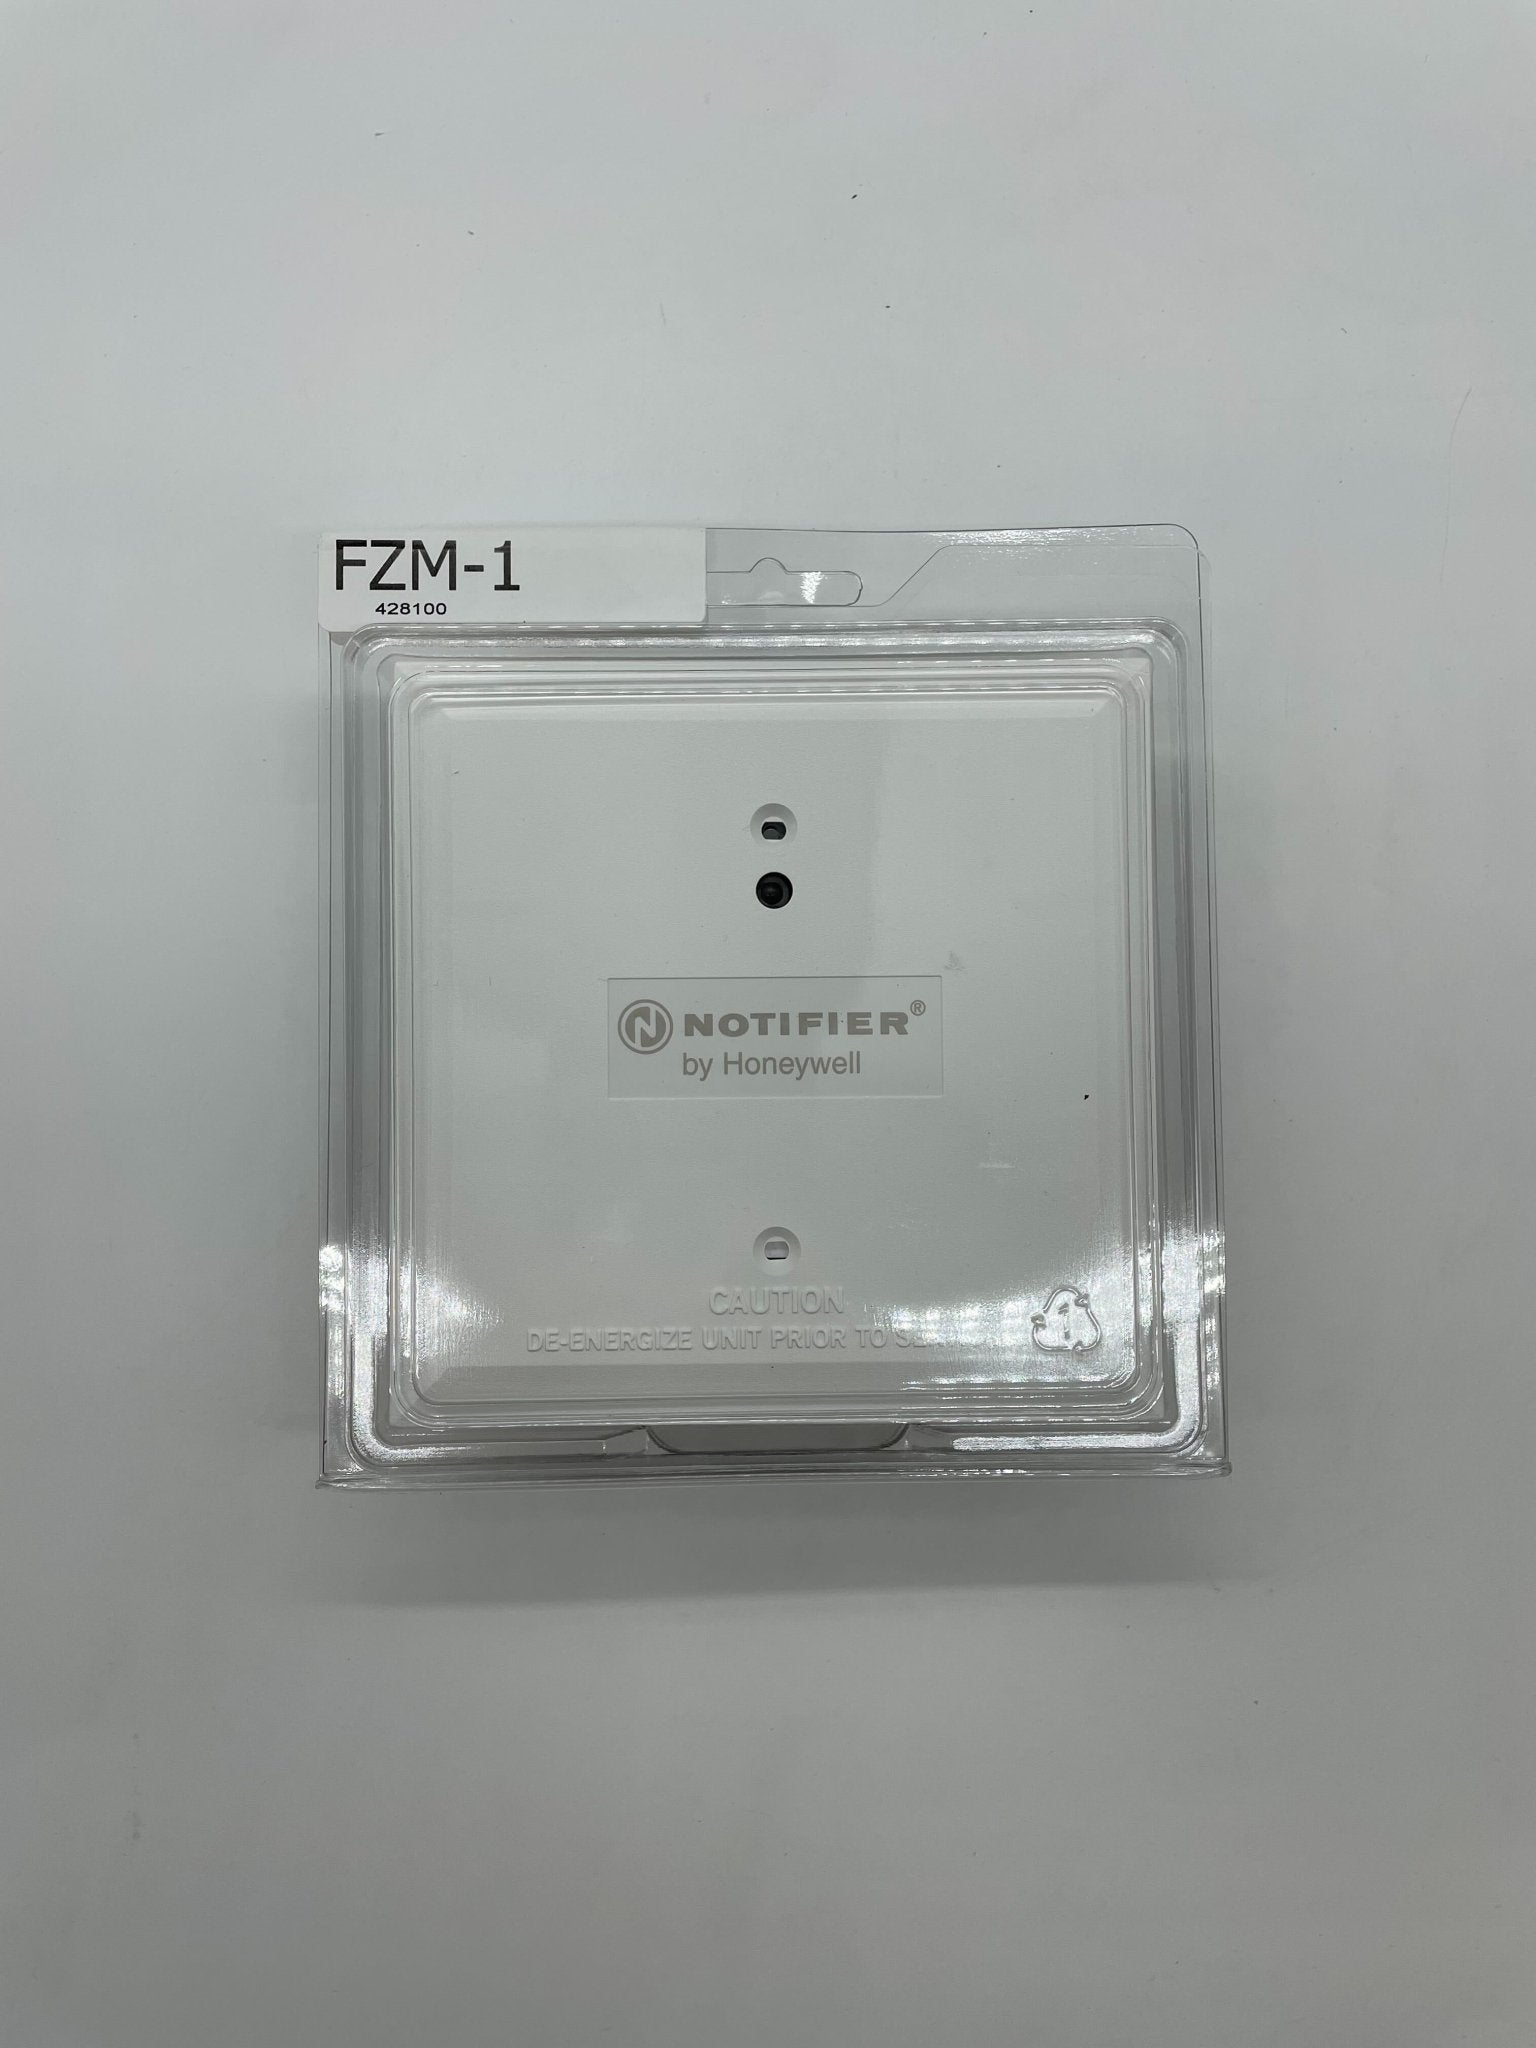 Notifier FZM-1 - The Fire Alarm Supplier